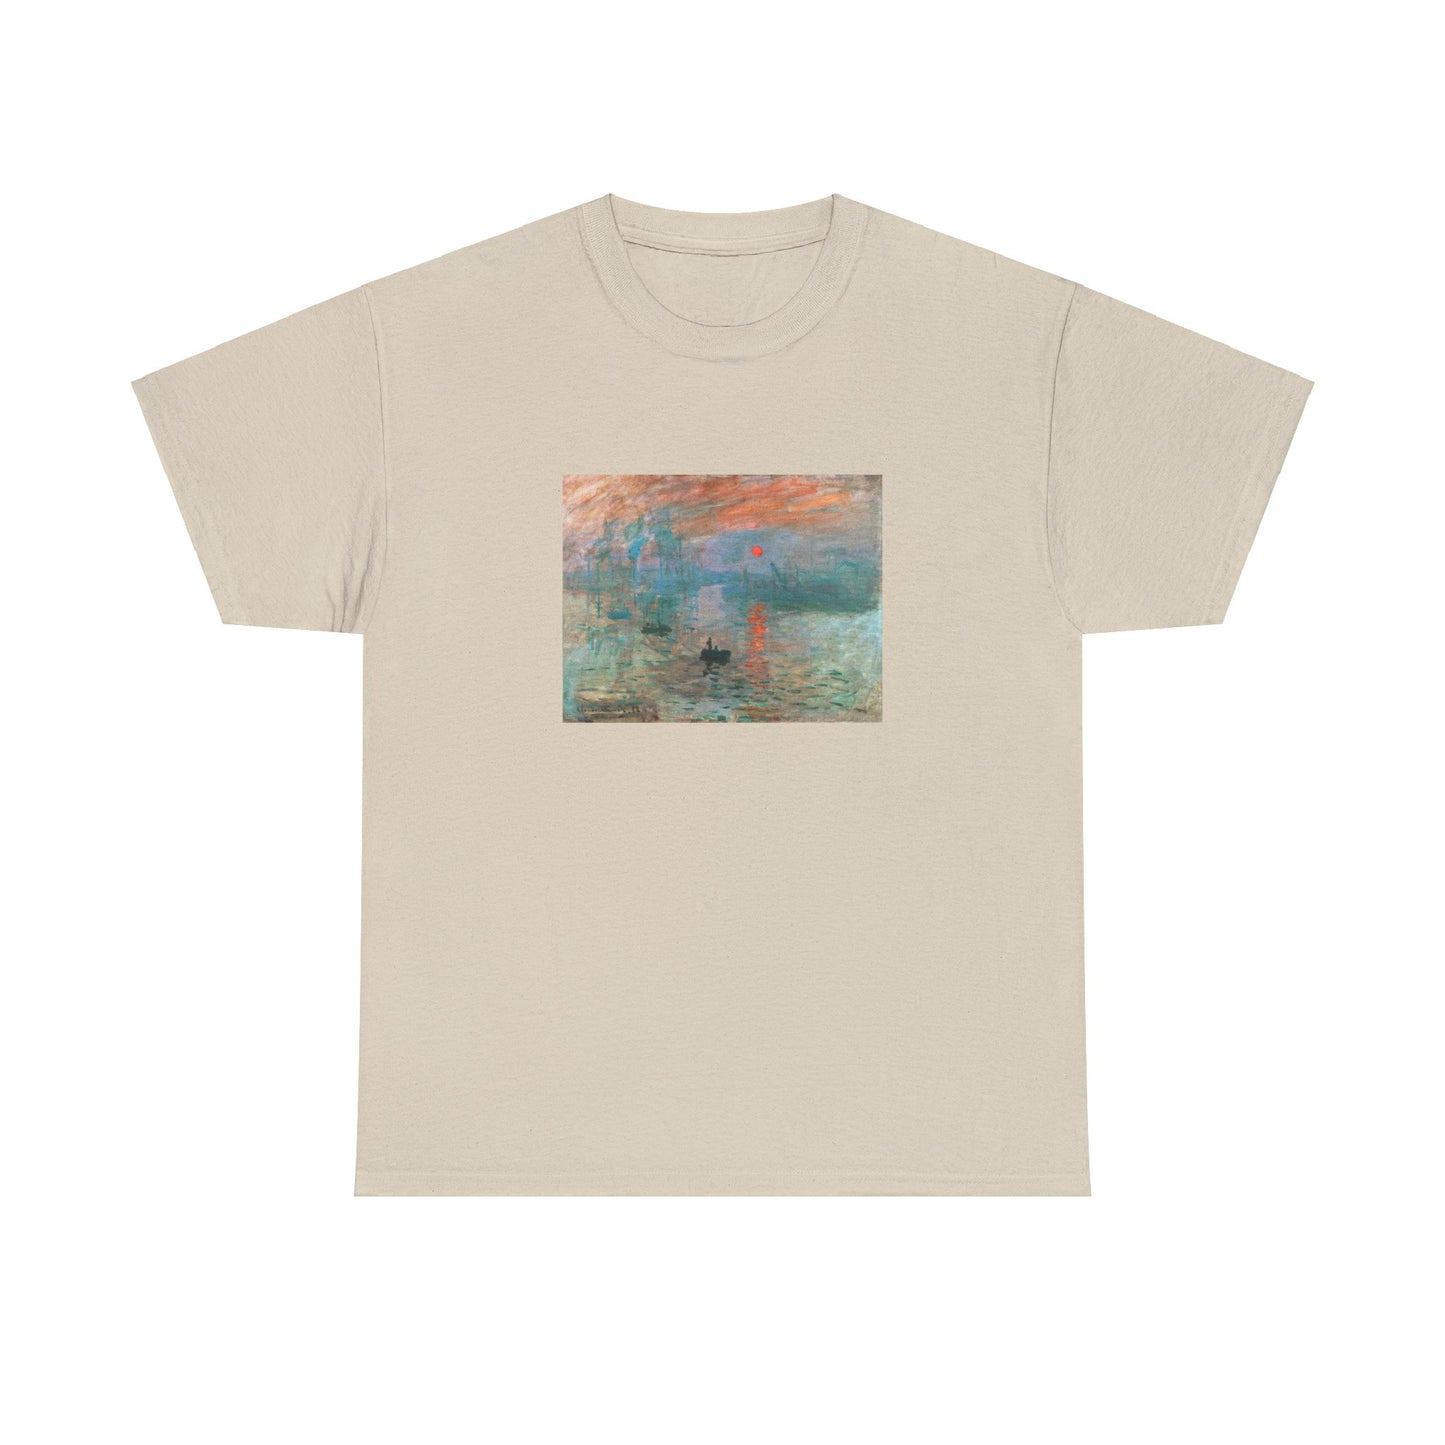 Claude Monet - Impression, Sunrise (1872)